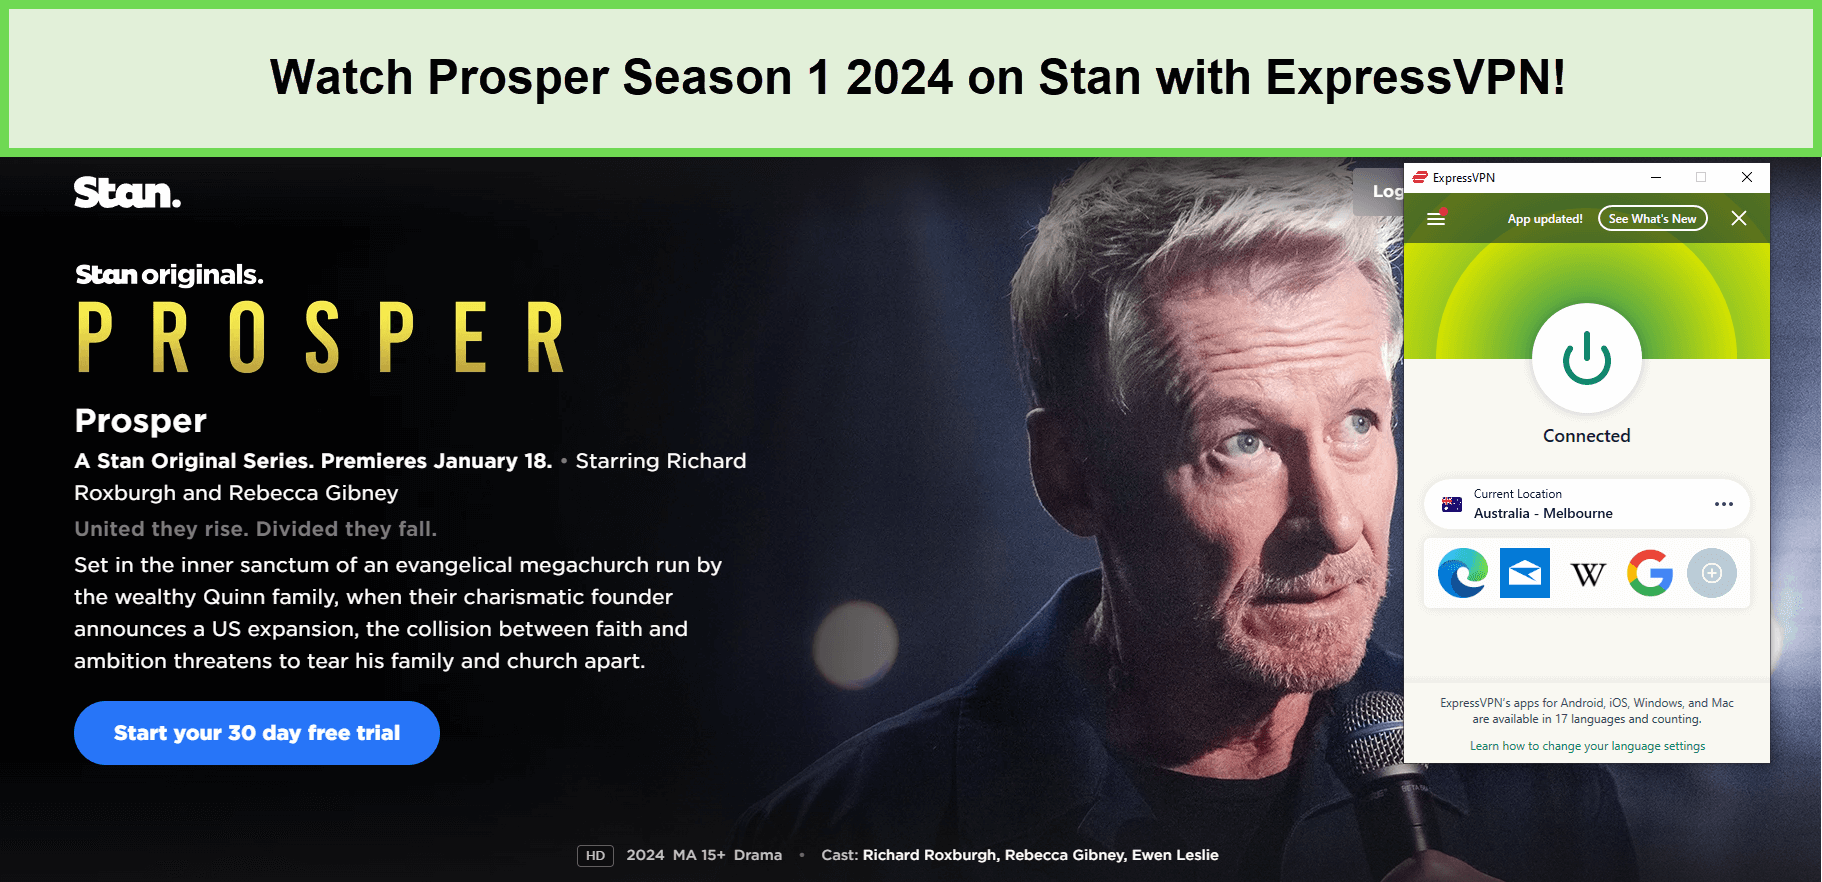 Watch-Prosper-Season-1-2024-in-UAE-on-Stan-with-ExpressVPN